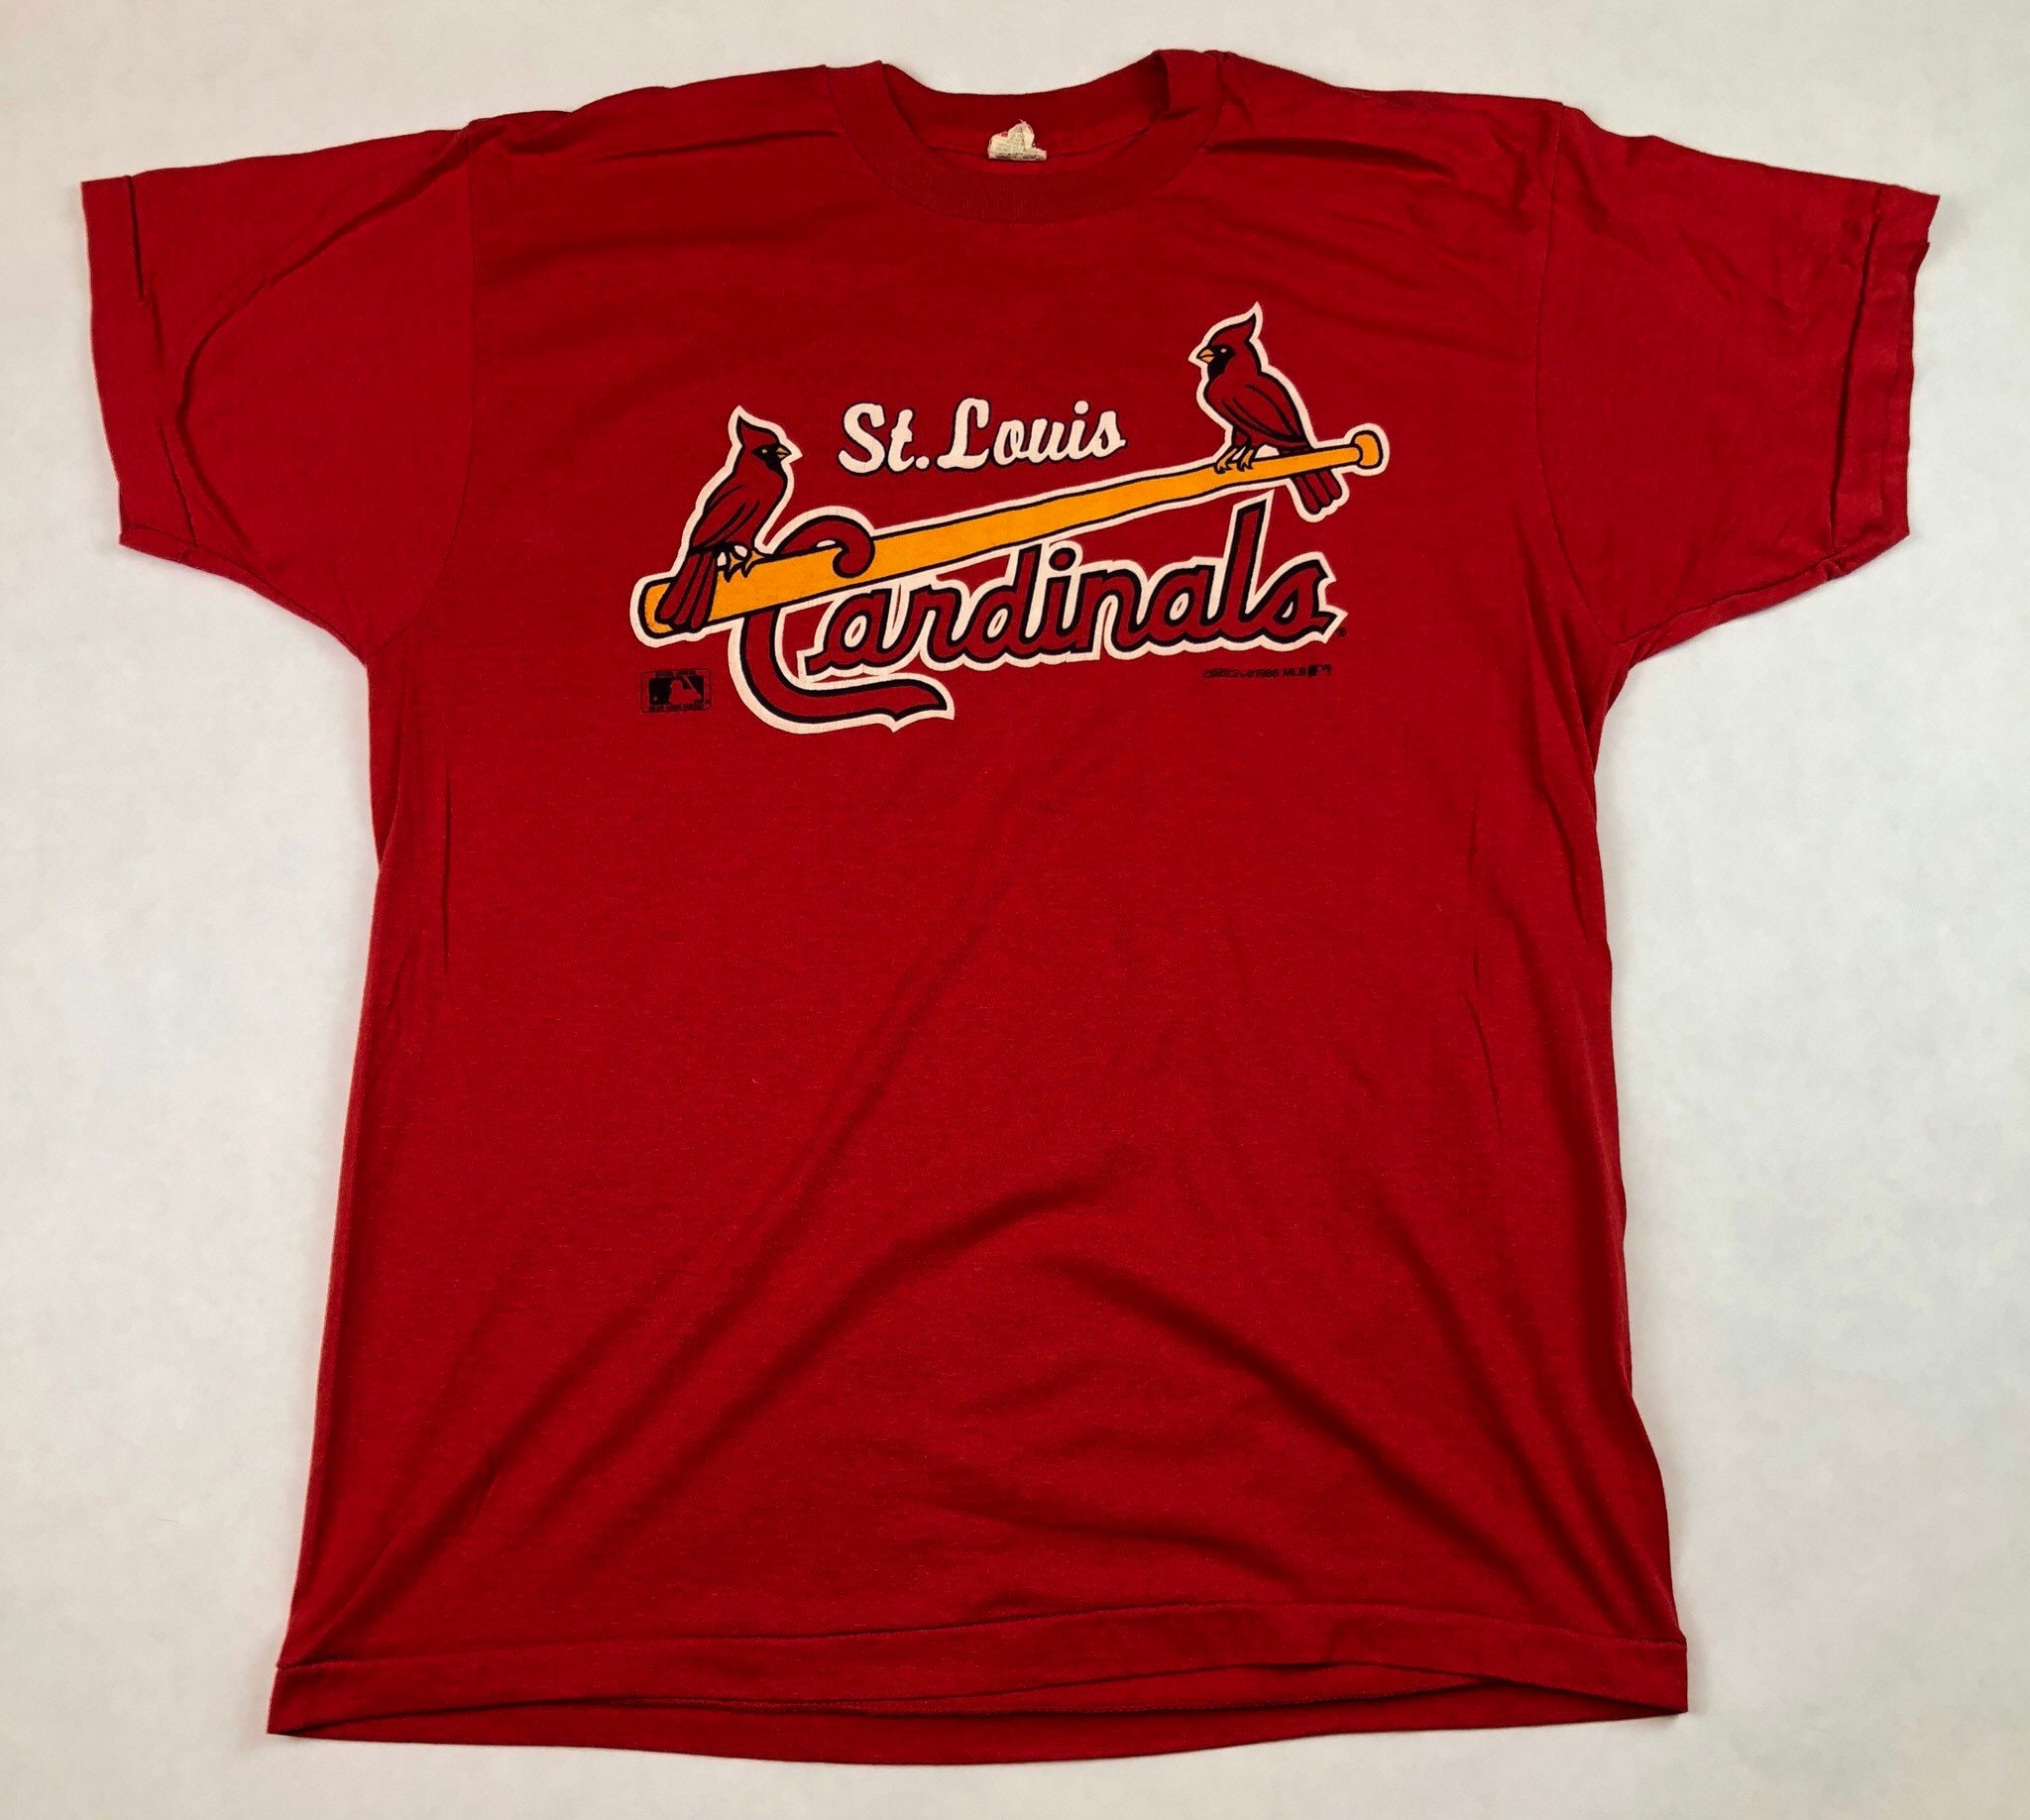 Vintage St. Louis Cardinals T-Shirt | Etsy